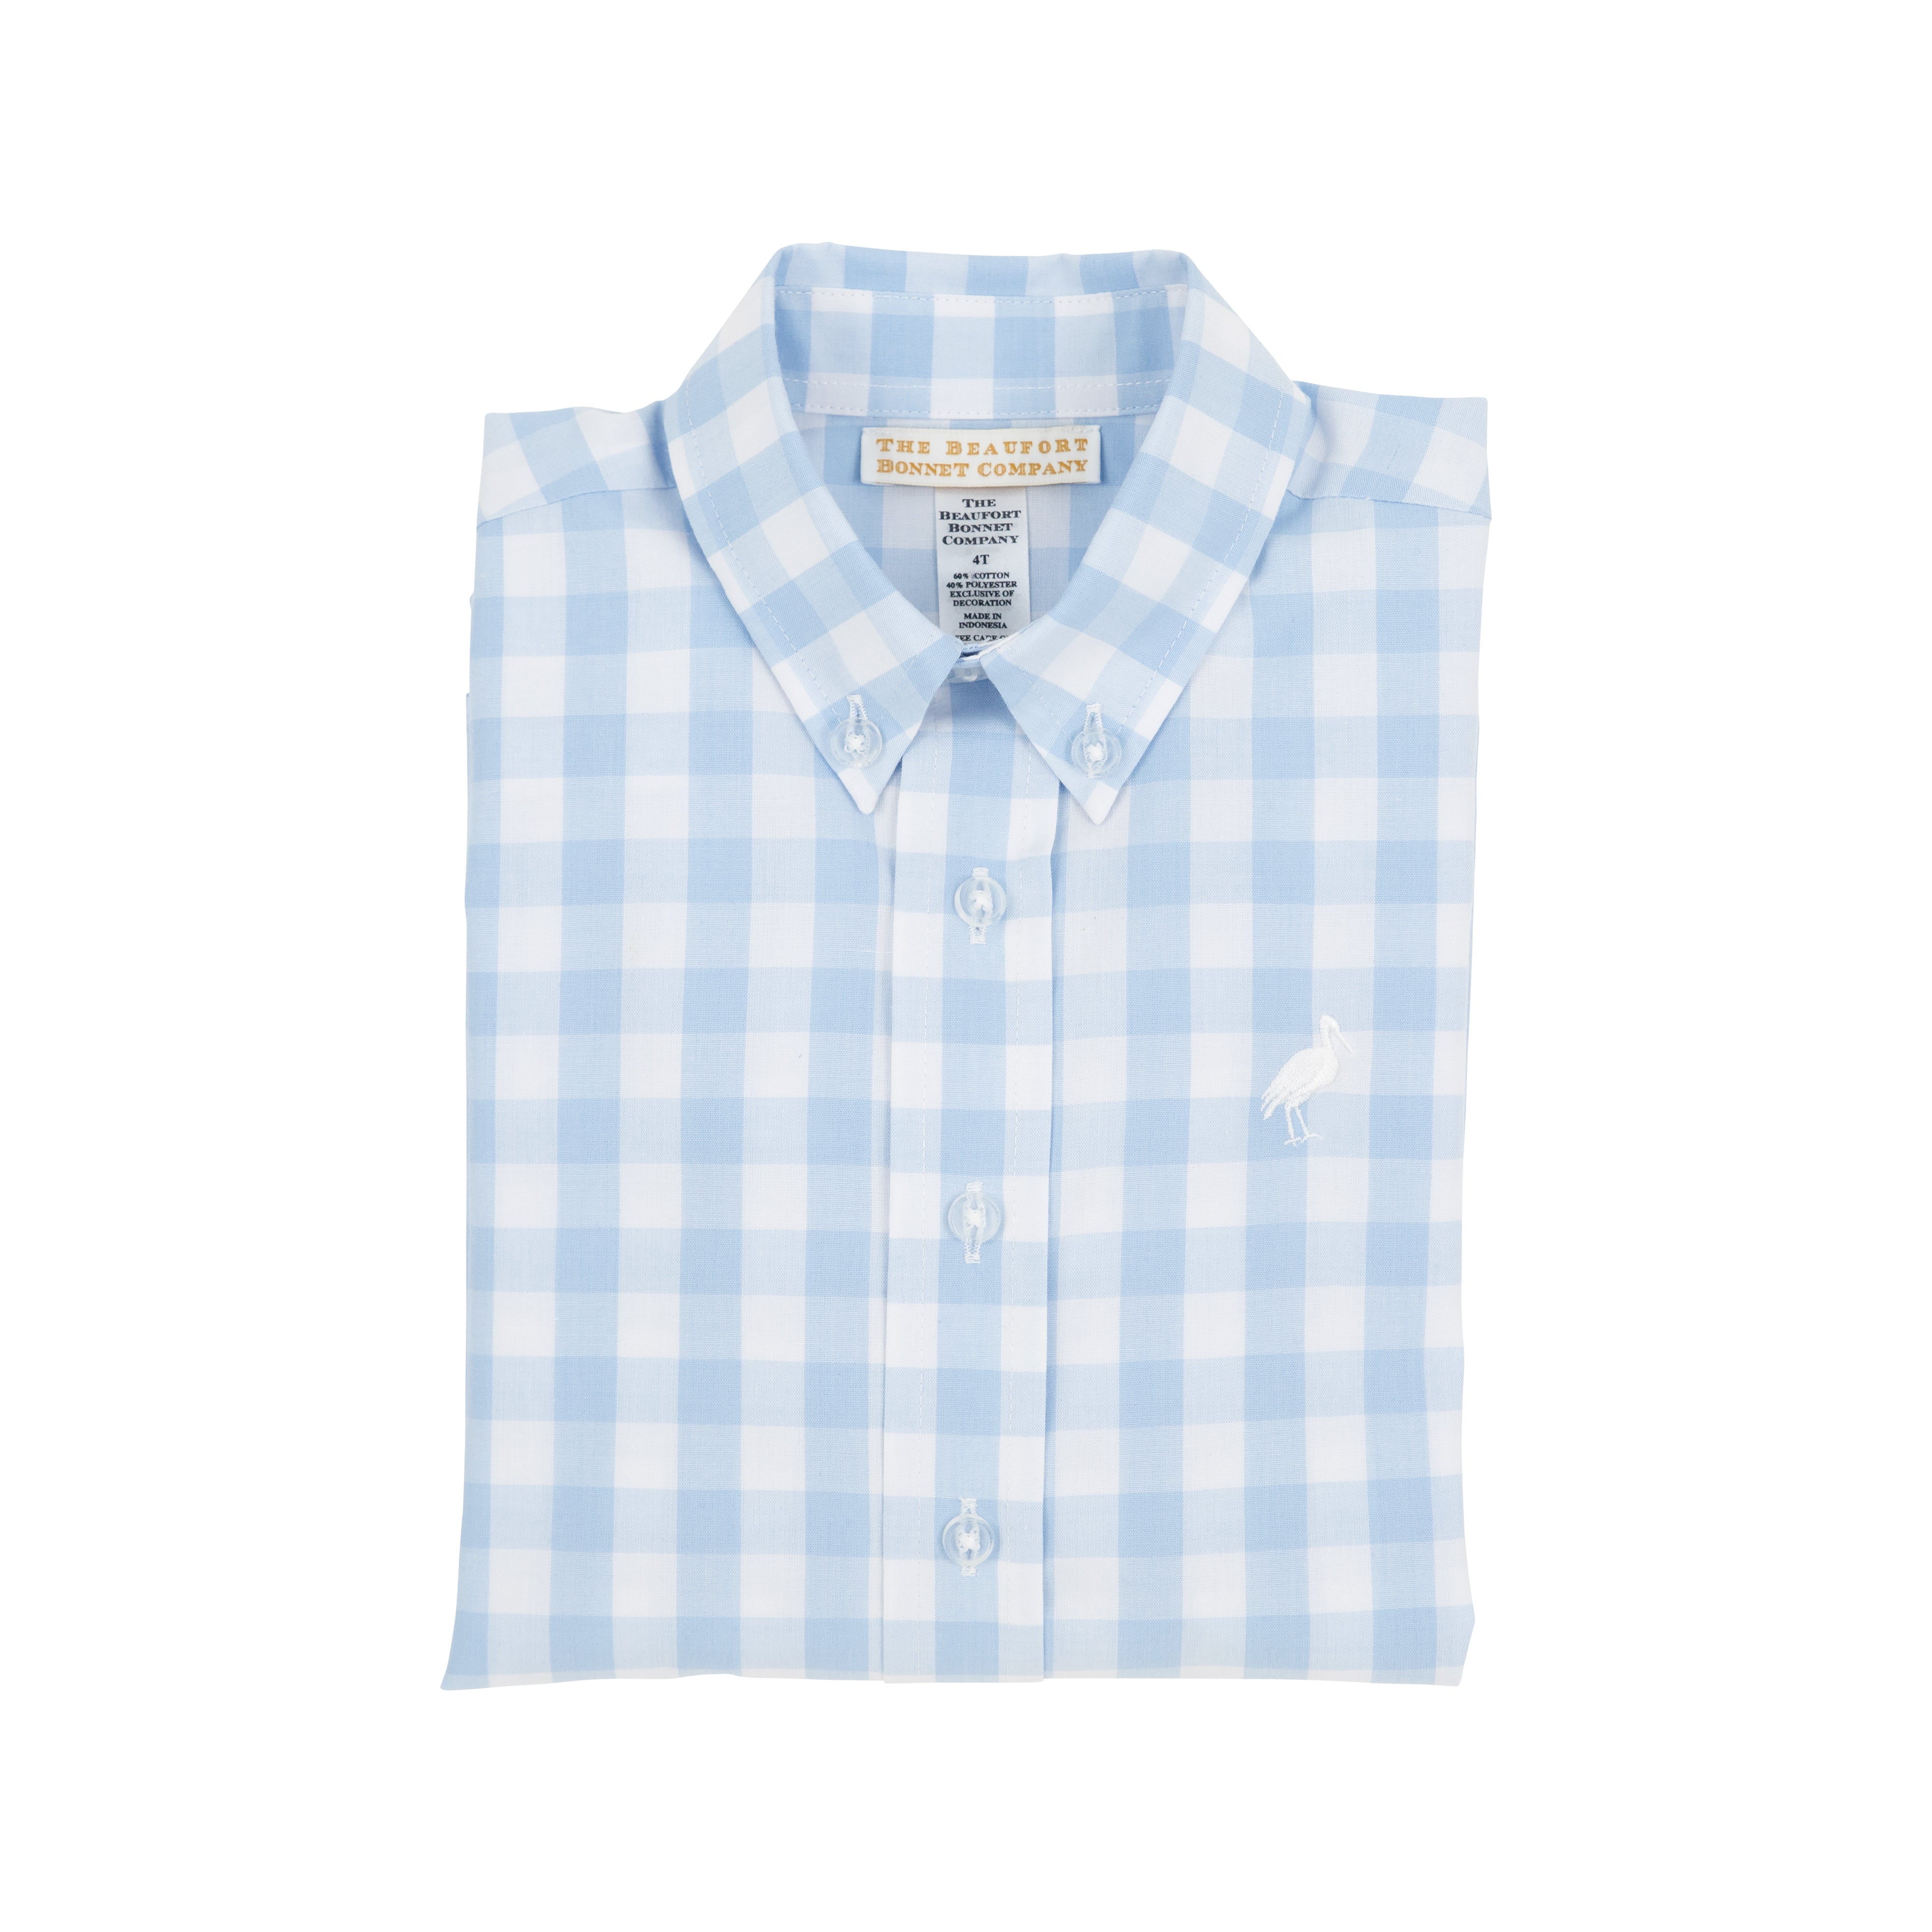 The Beaufort Bonnet Company - Dean's List Dress Shirt - Beale Street Blue Check